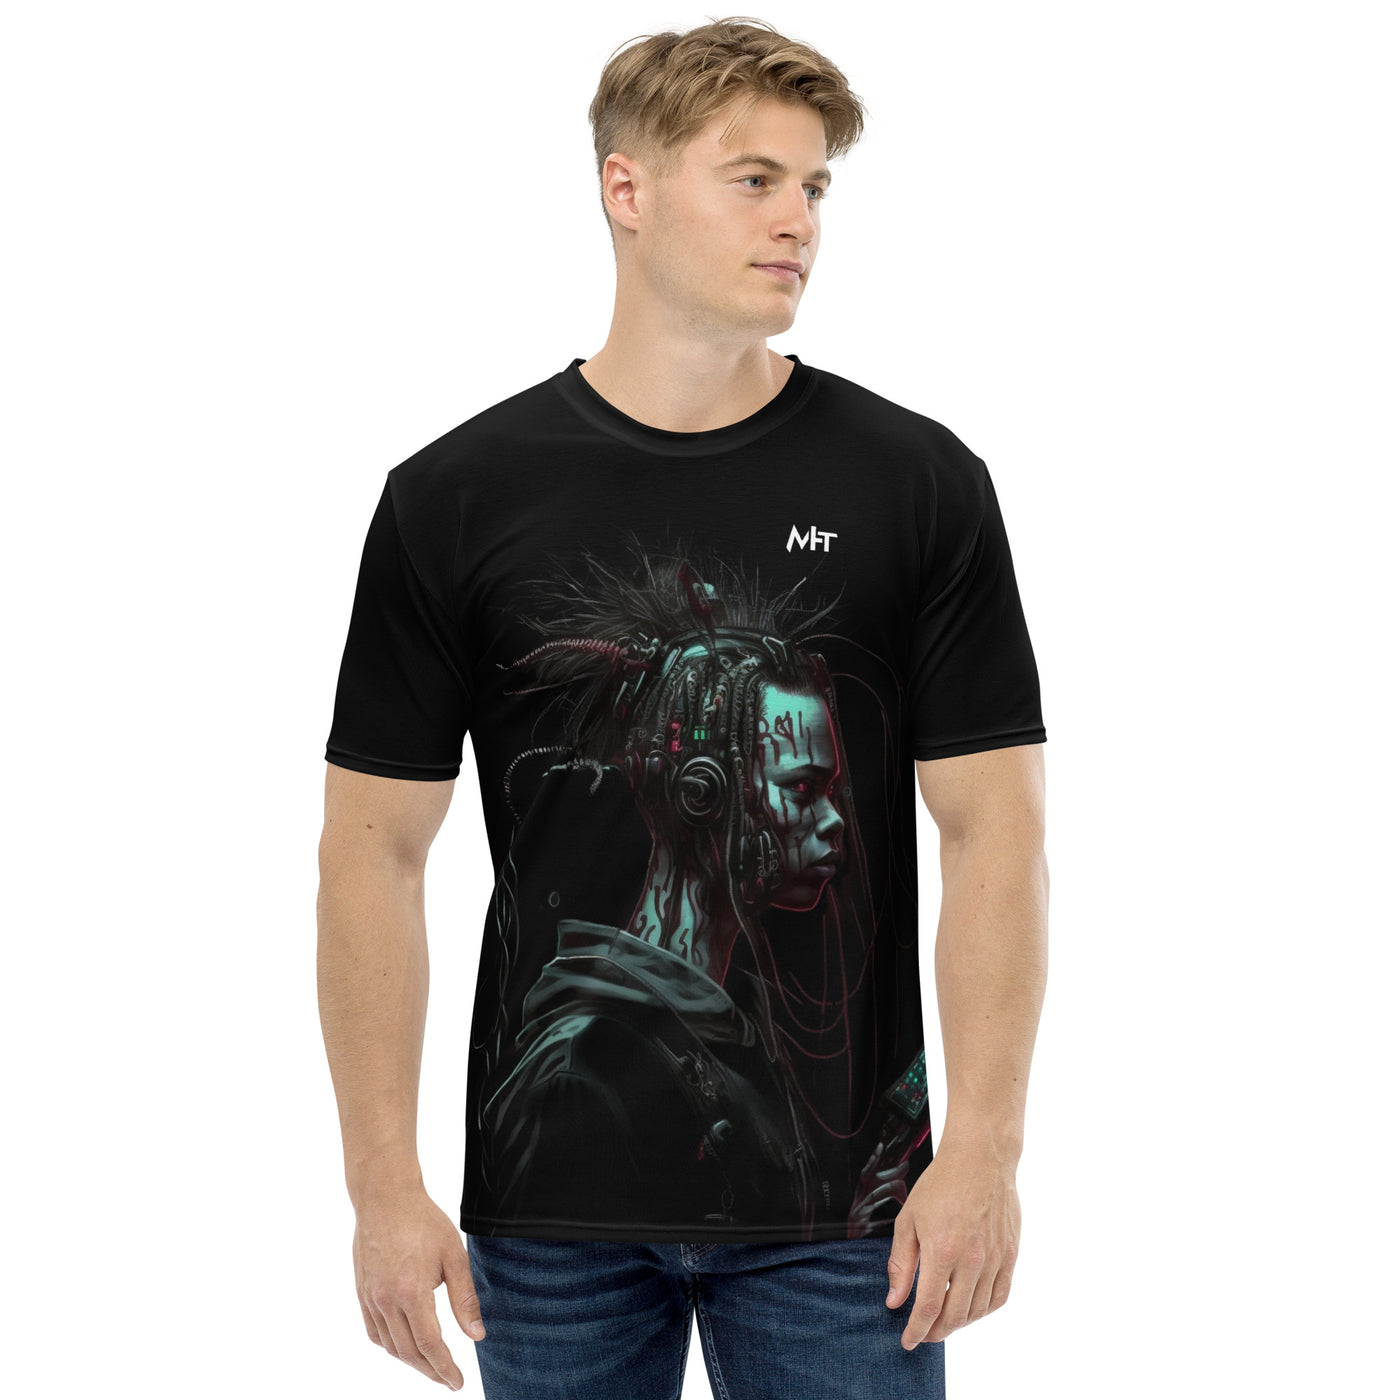 Cyberware assassin v7-  Men's t-shirt